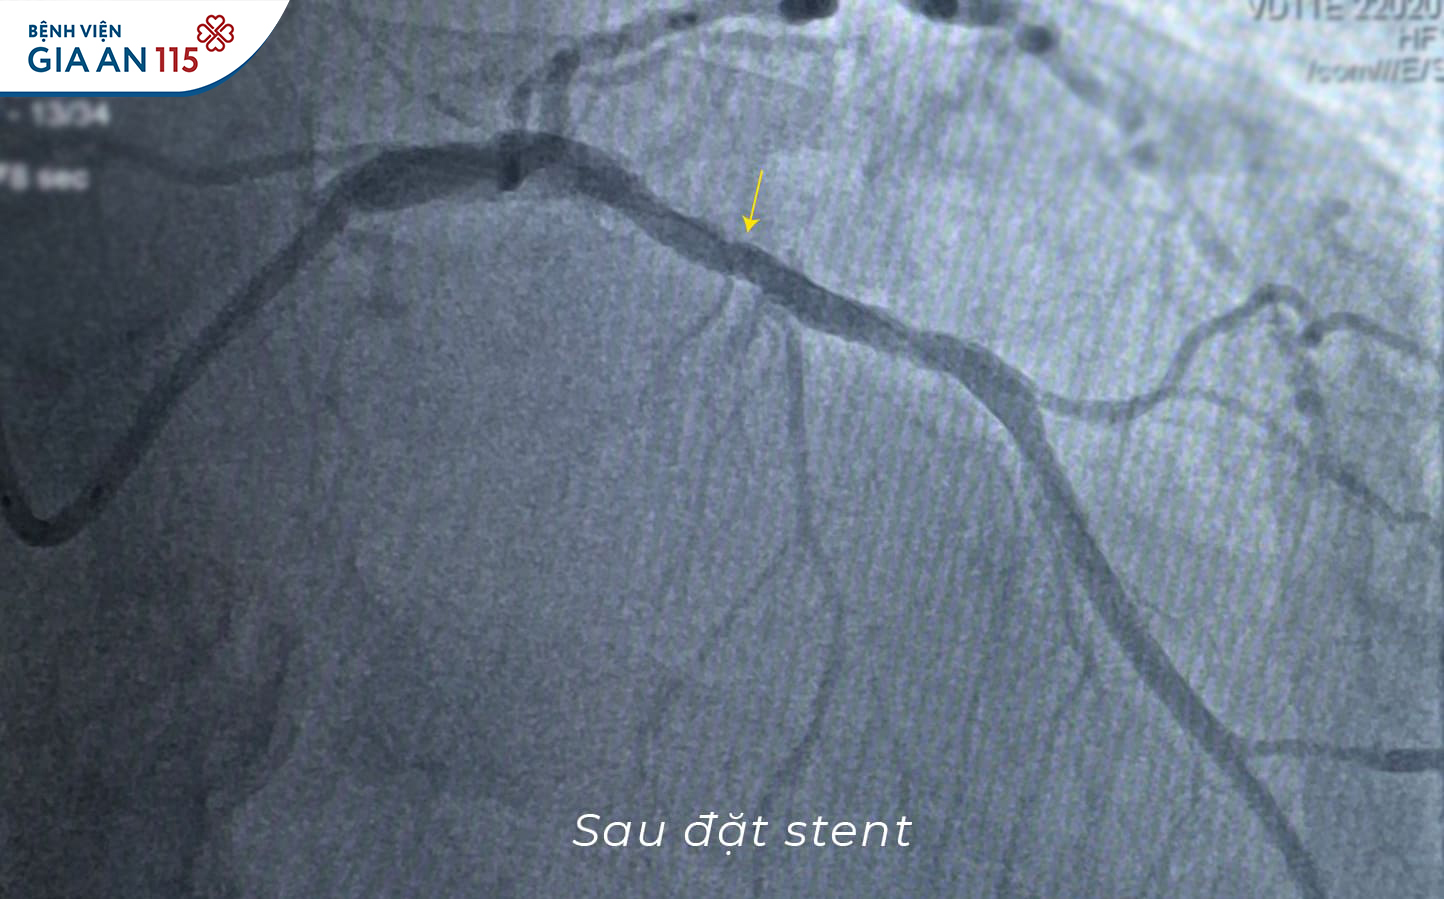 Động mạch vành người bệnh được đặt stent